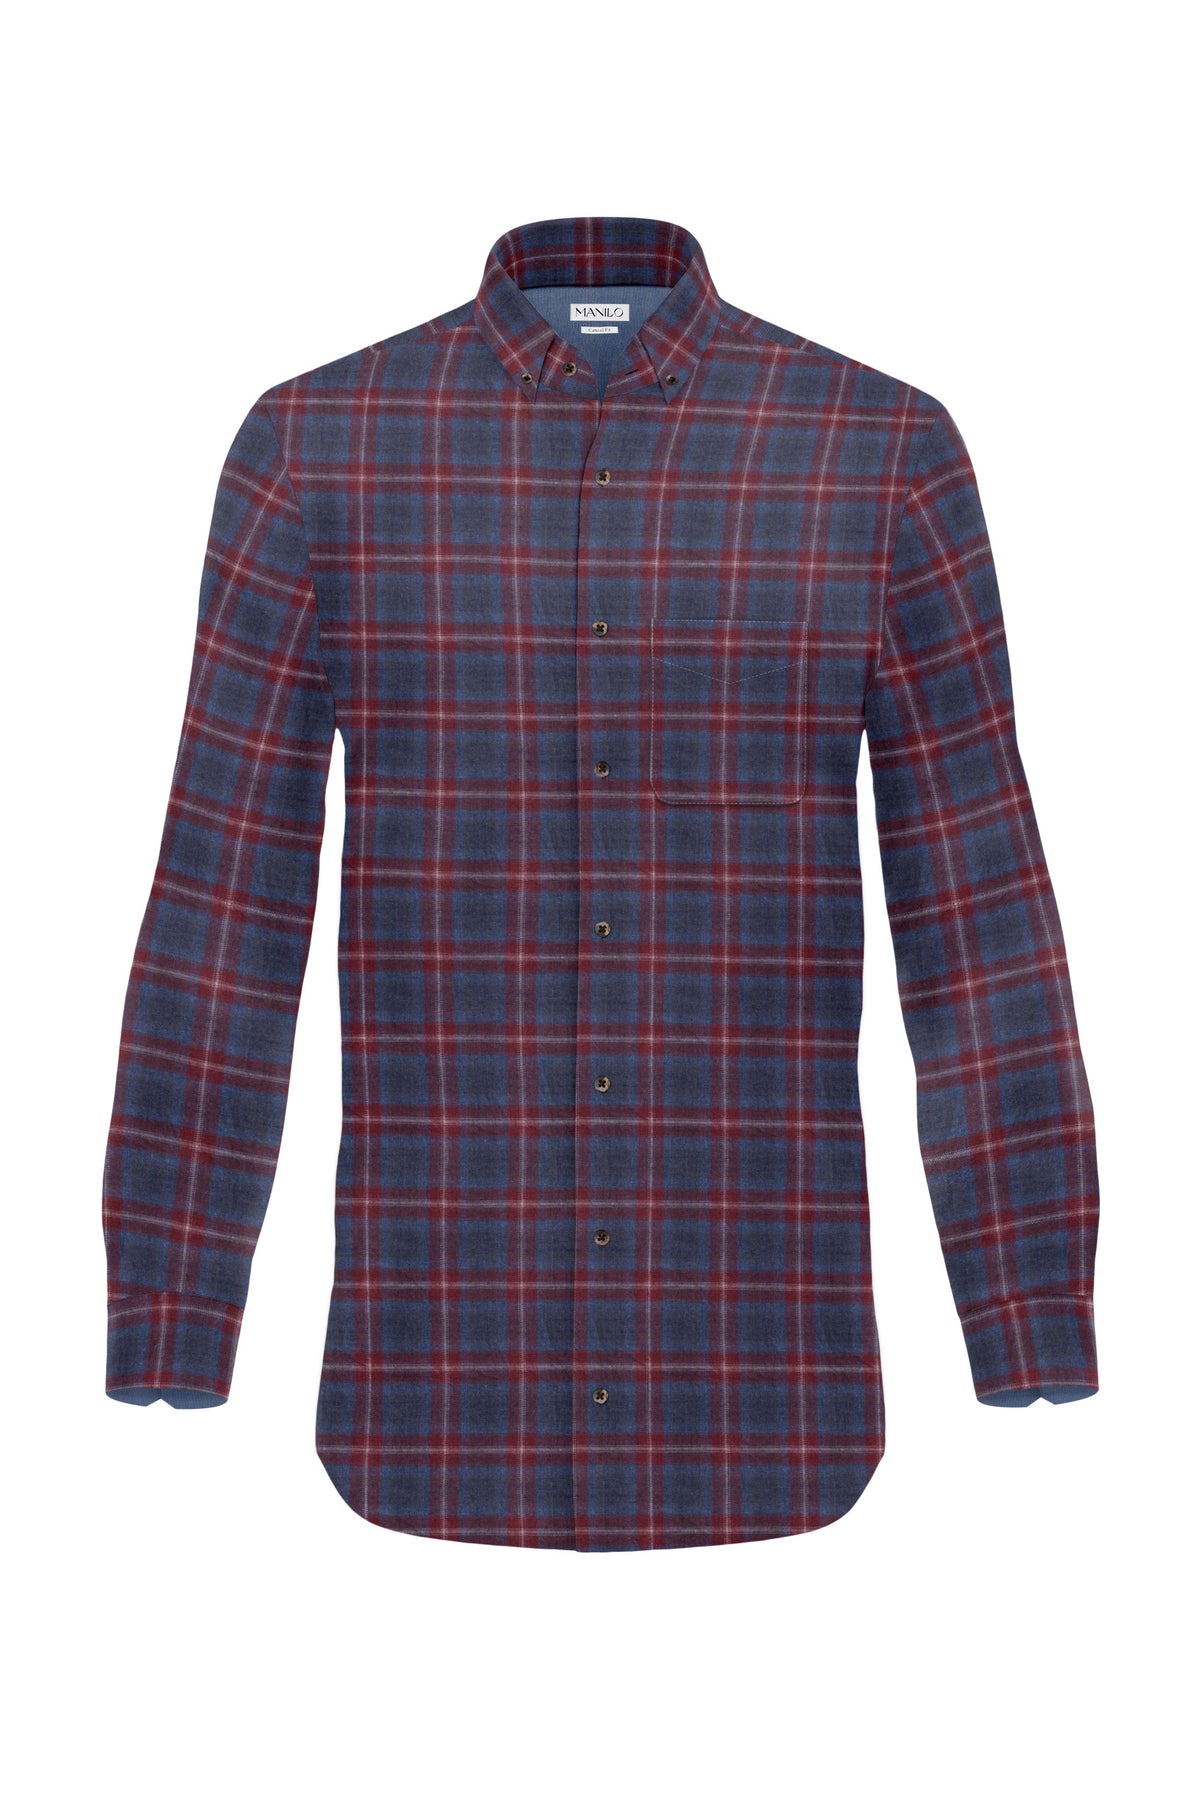 chemise en flanelle avec motif à carreaux rouge/bleu (art. 2132-C)